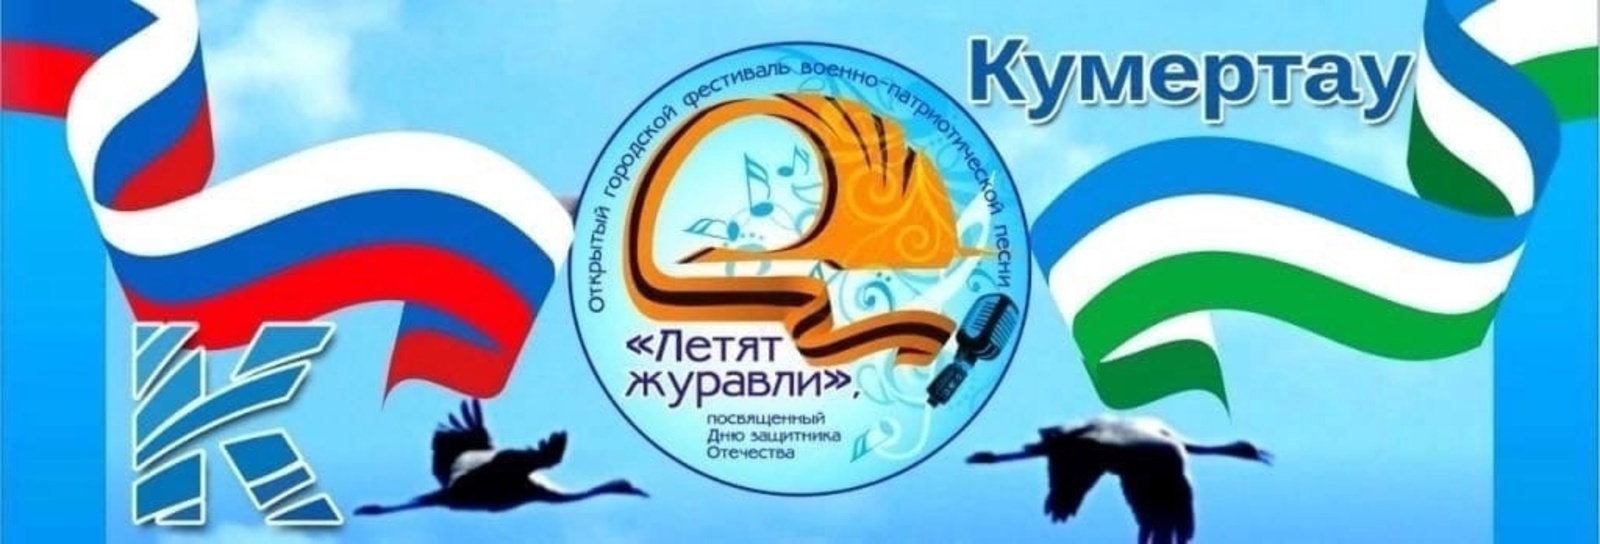 В Кумертау состоится Открытый городской фестиваль военно-патриотической песни "Летят журавли"